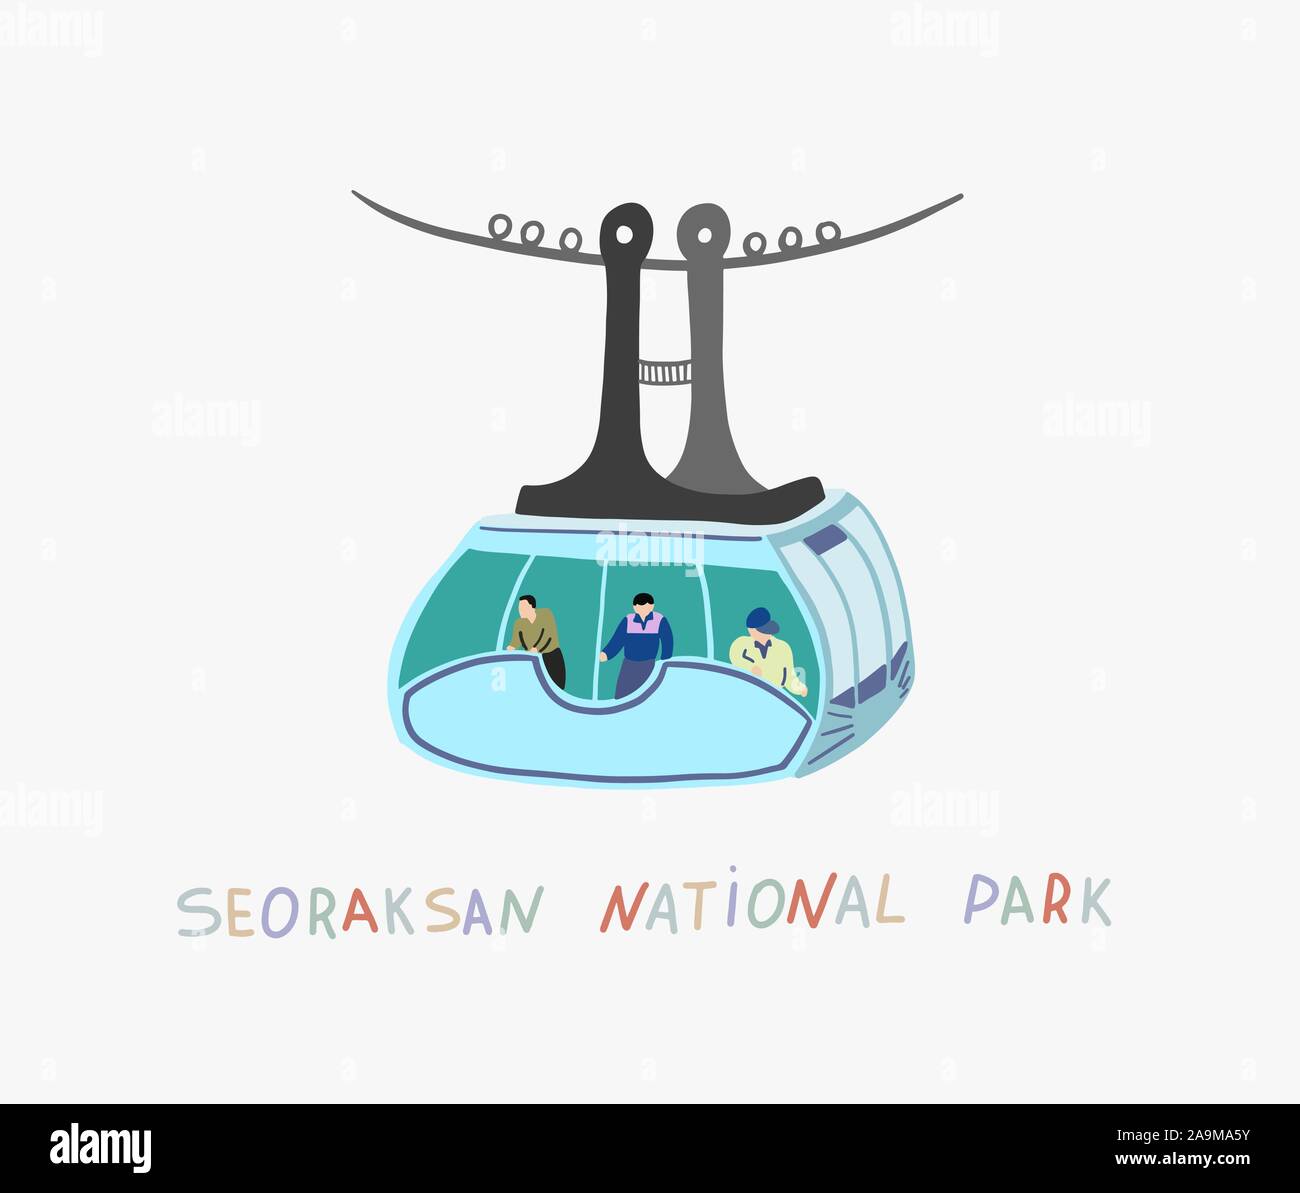 Illustrazione della funicolare in seoraksan national park Illustrazione Vettoriale